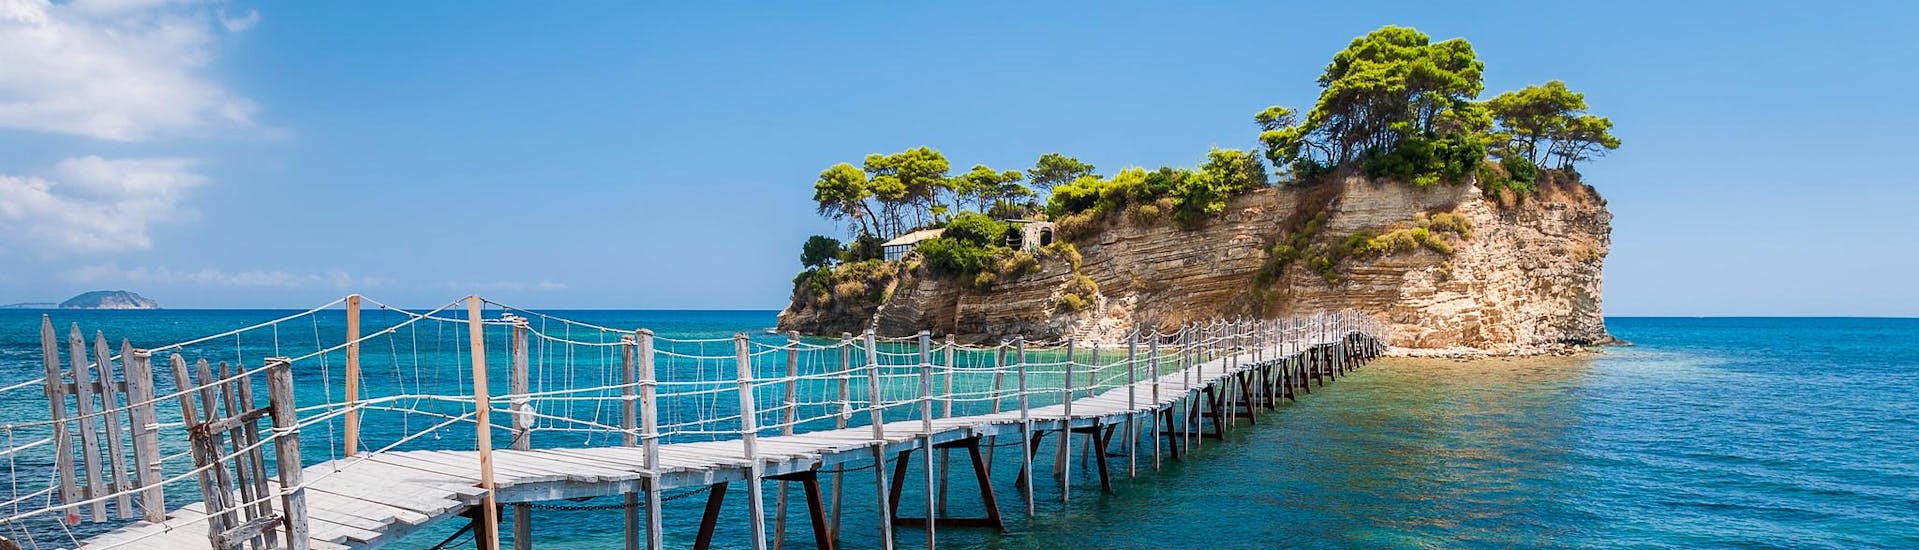 Uitzicht over Cameo eiland, een idyllische locatie die bereikbaar is met een boottocht naar Zakynthos.